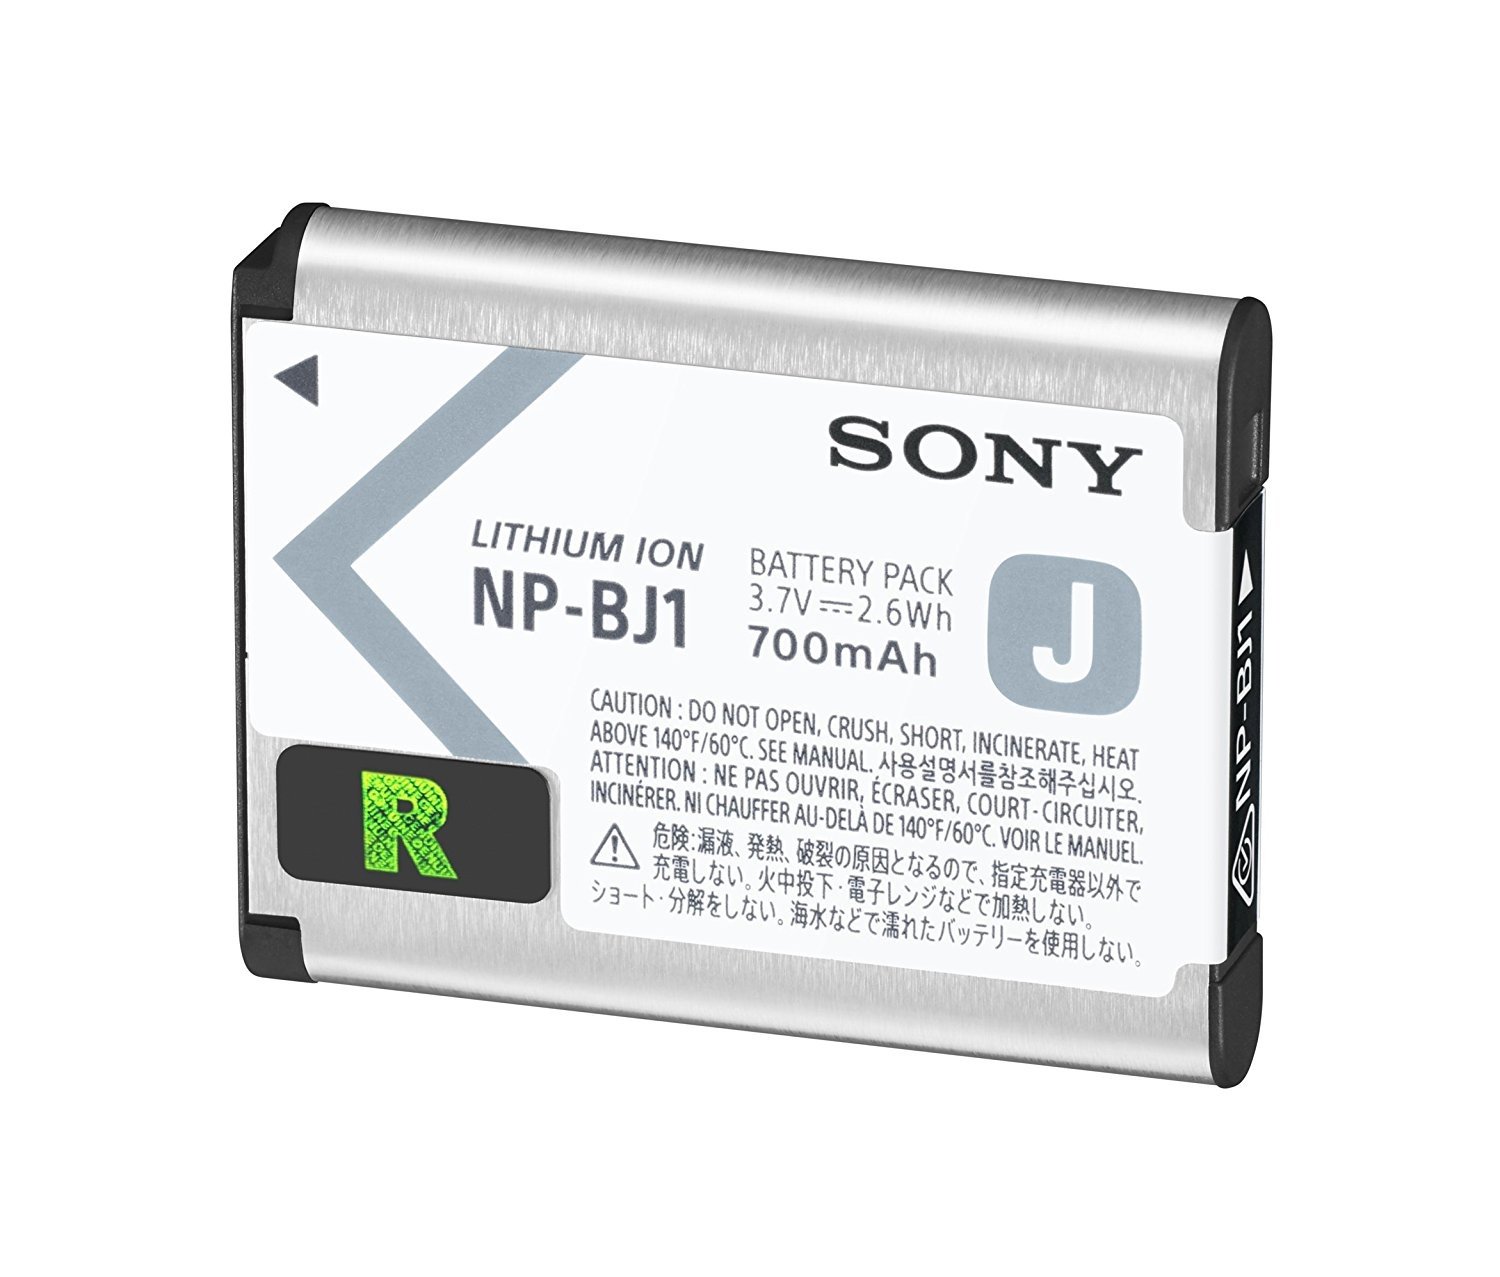  Акумулятор Sony NP-BJ1 для RX0, RX0 II (NPBJ1.CE) фото